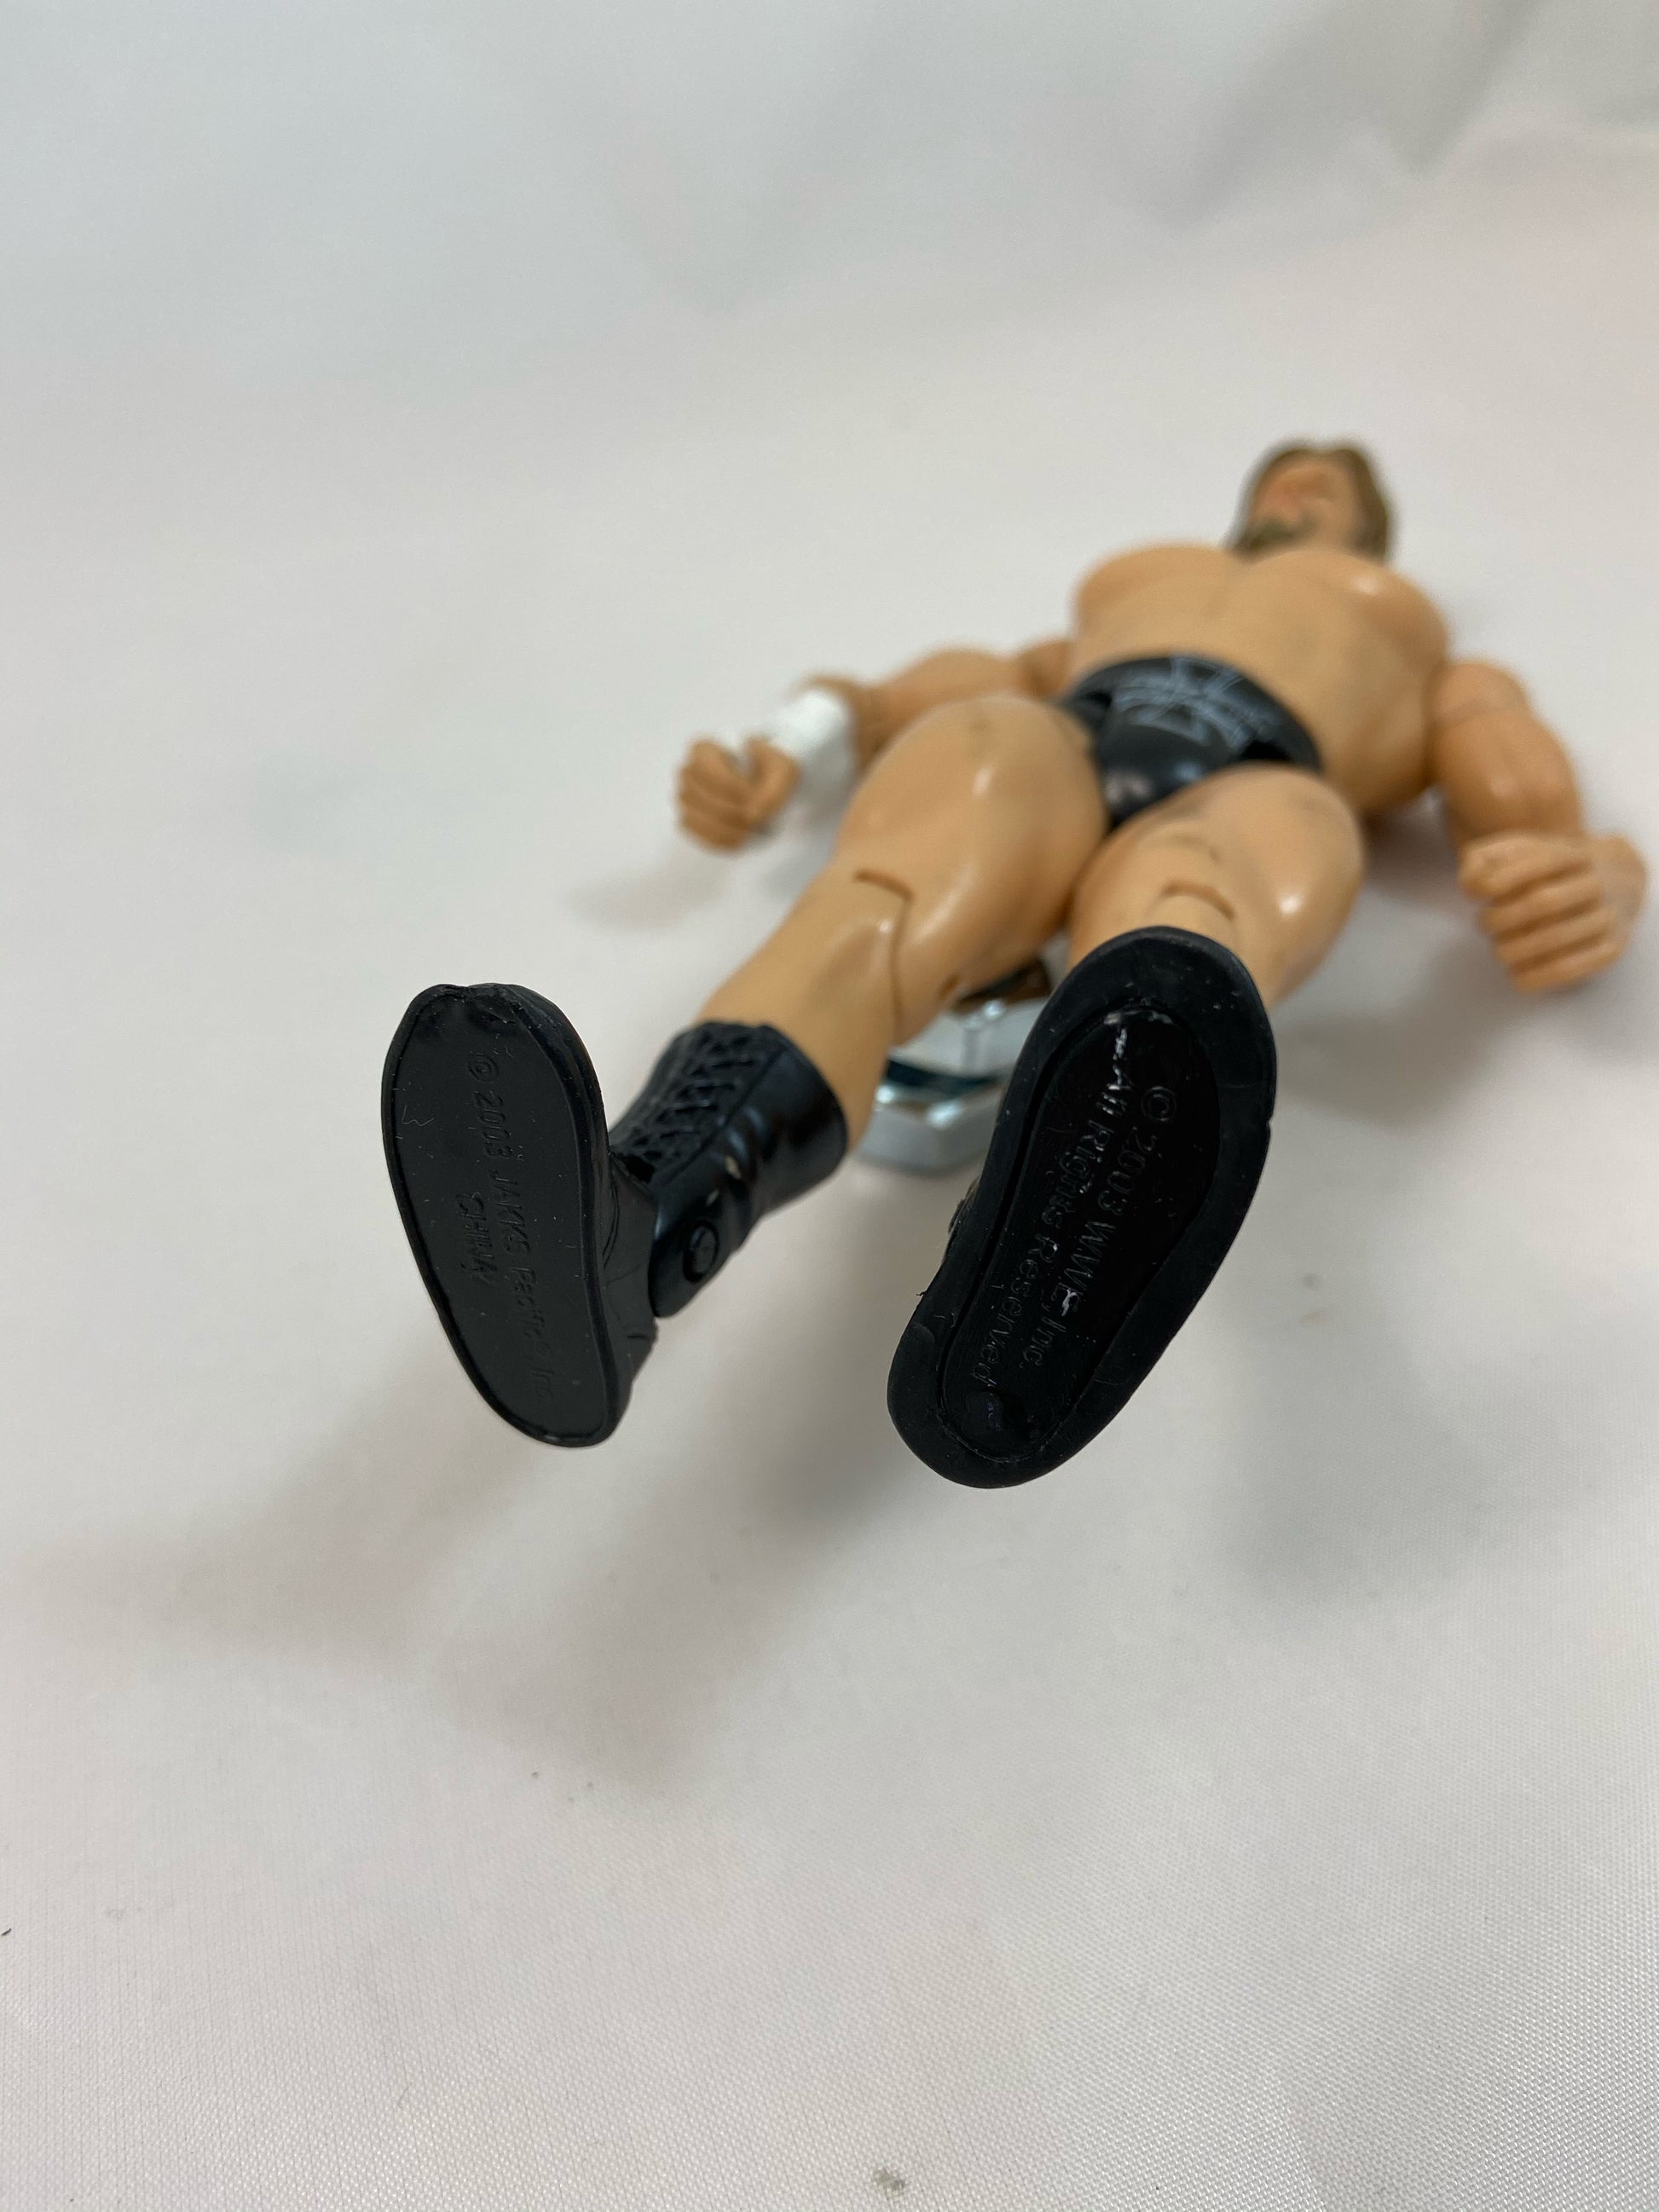 Jakks Pacific Triple H 2003 - Loose Action Figure